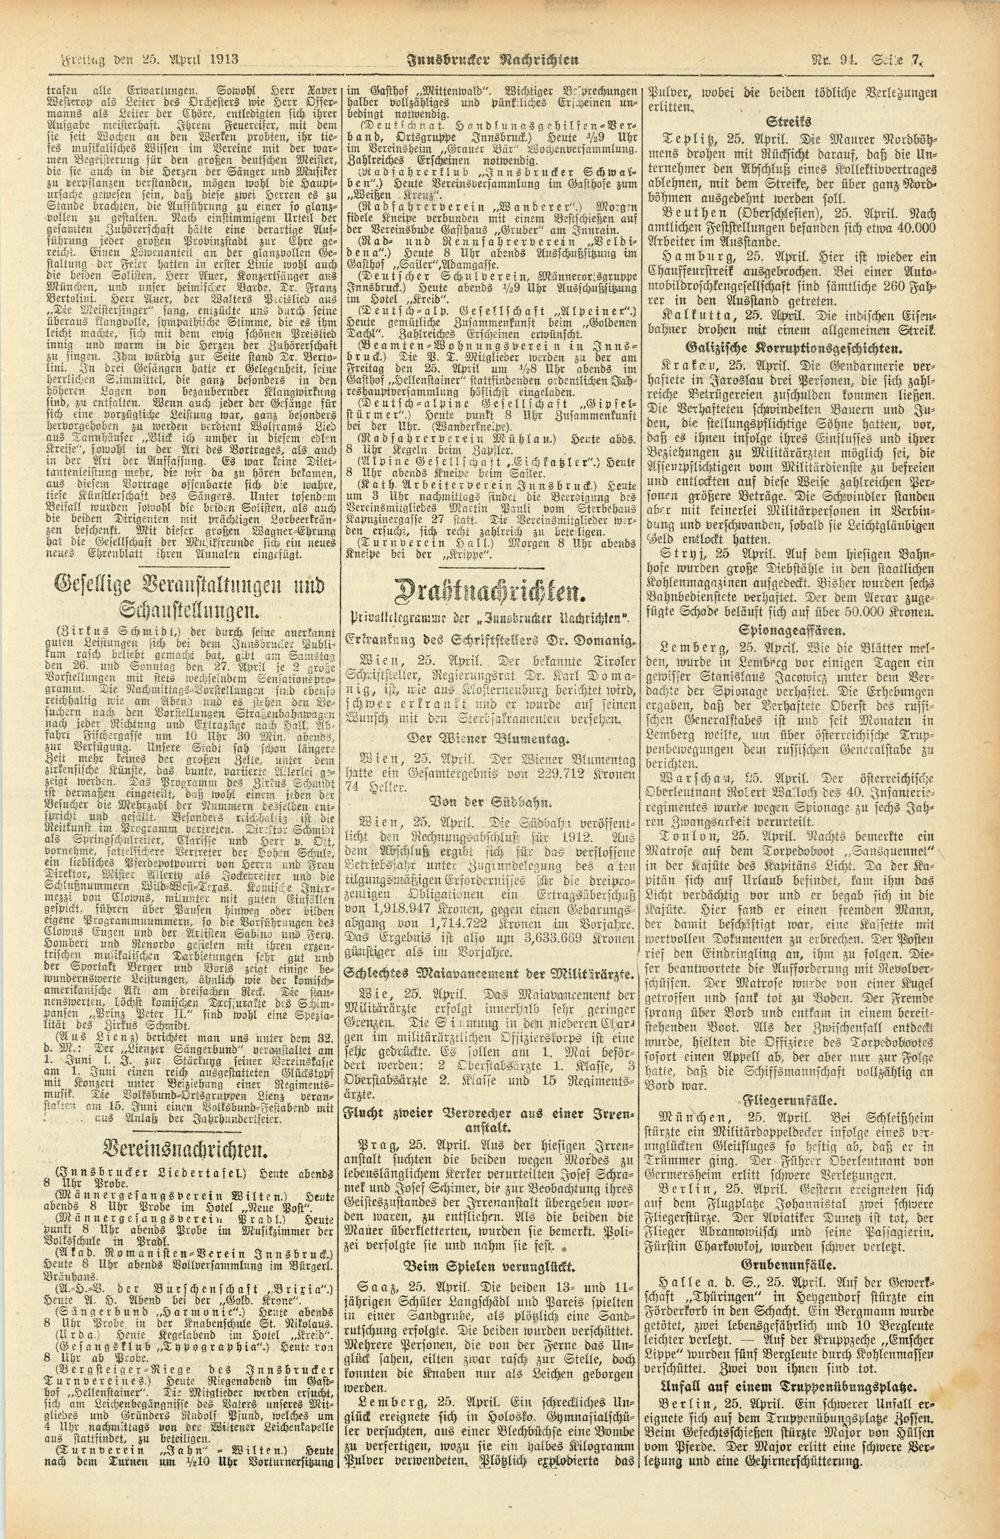 FreUng den 25. Aprtl Id 13 Innsbrucker Nachrichten Nc. 94. 7, trafen alle Erwartungen. Sowohl Herr Laver im Gasthof Mittenwald ".